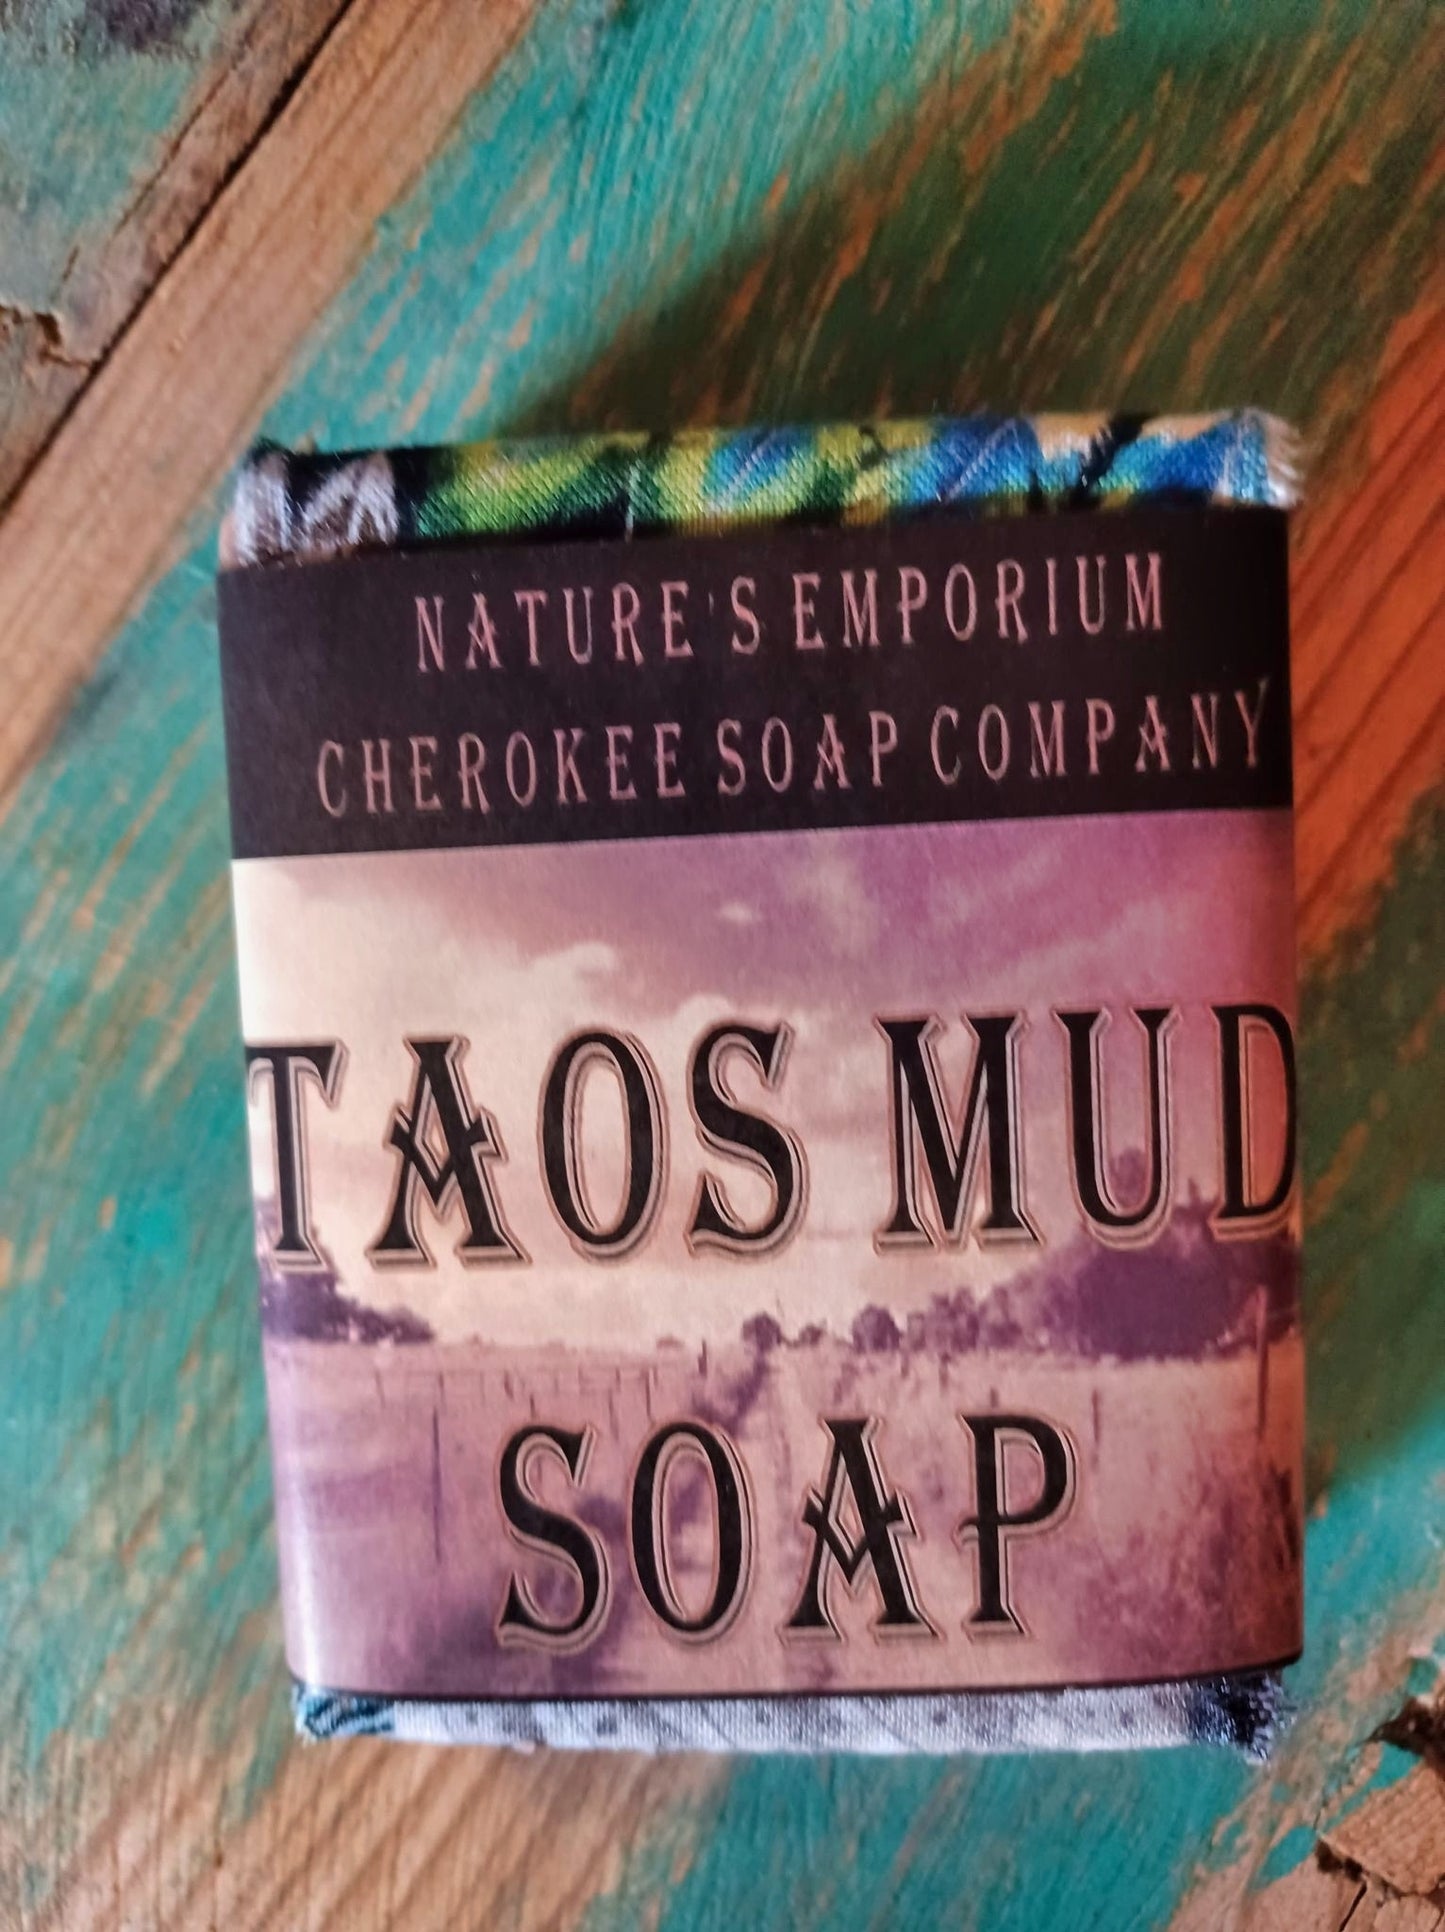 Taos Mud